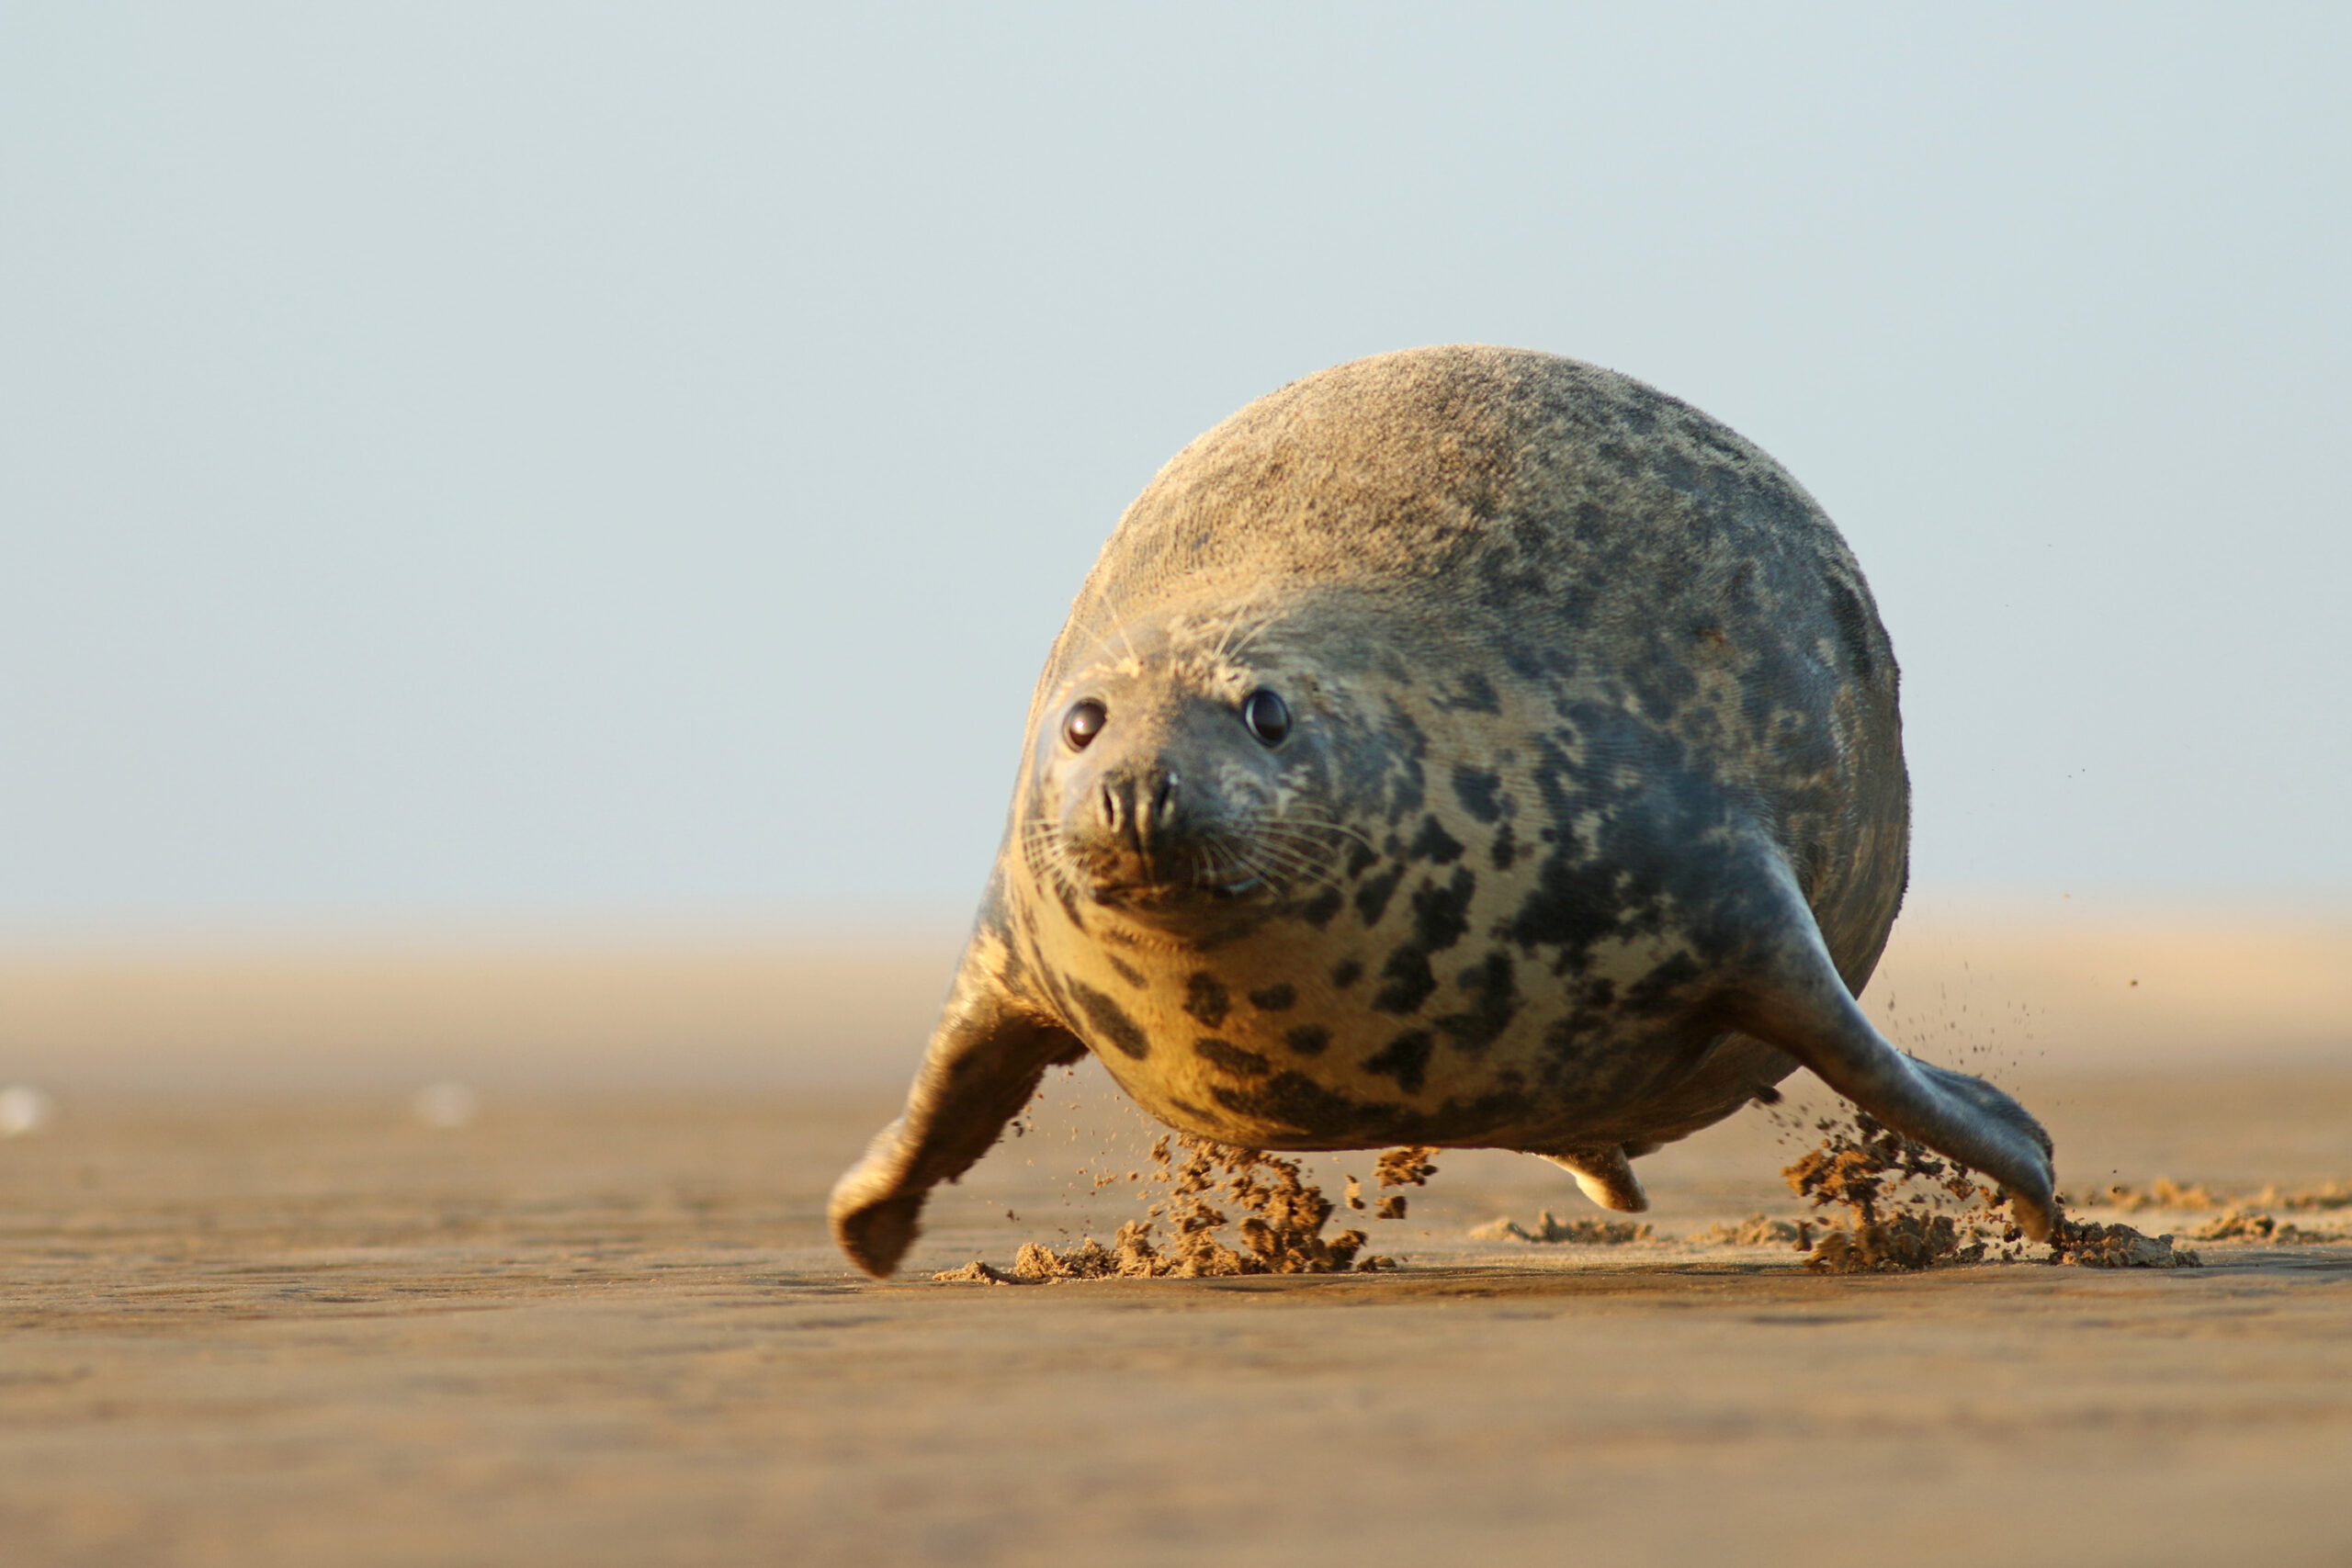 a small animal on a beach